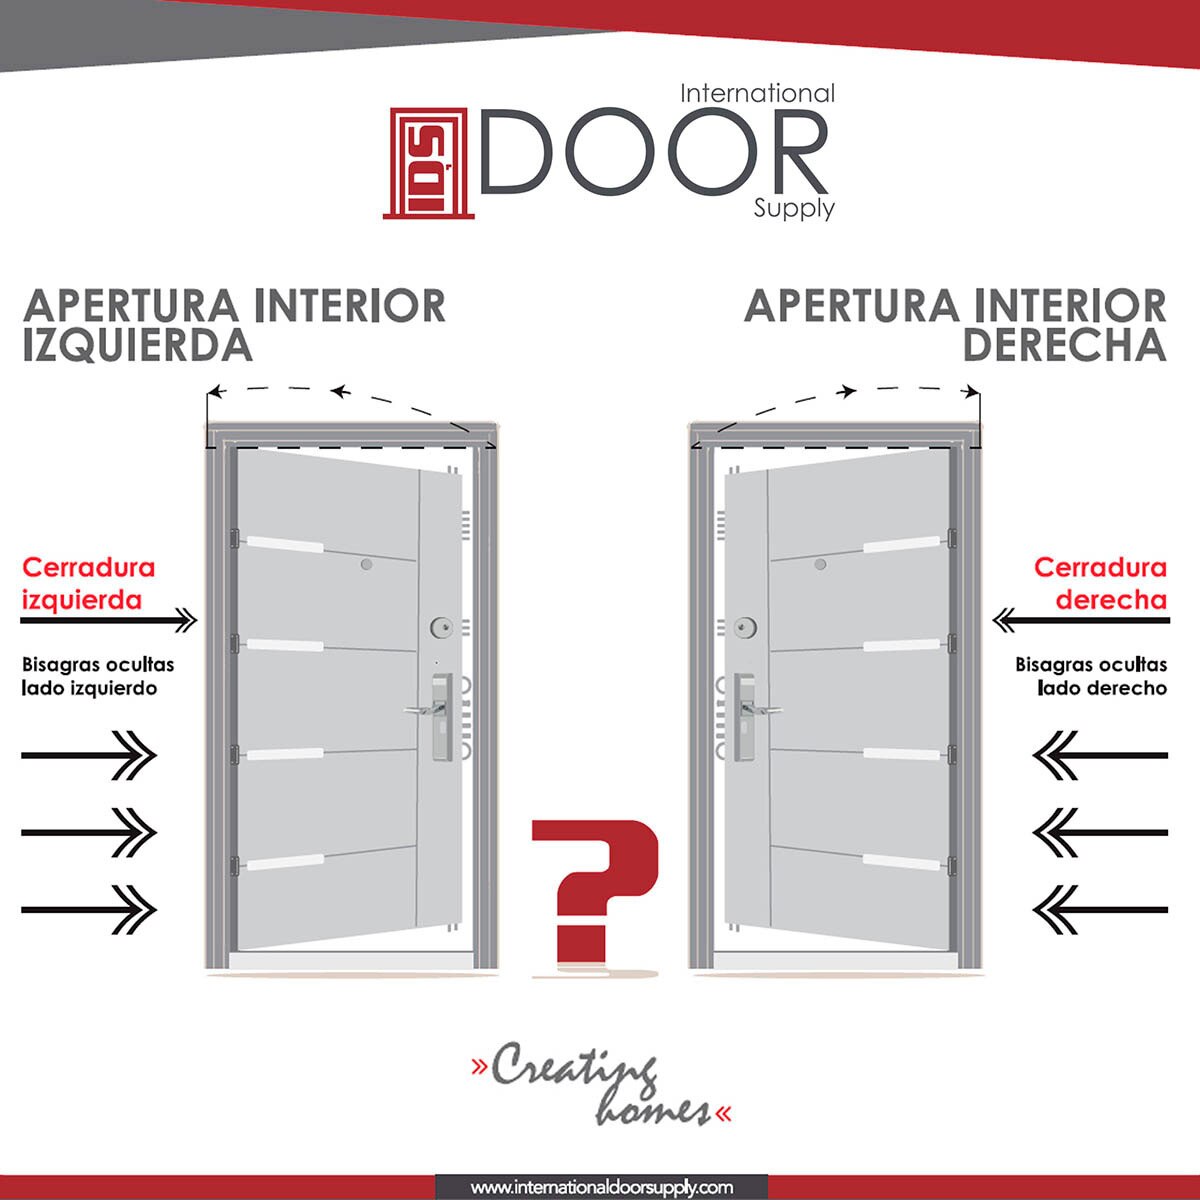 International Door Supply, Puerta de Alta Seguridad Santa Fe Derecha